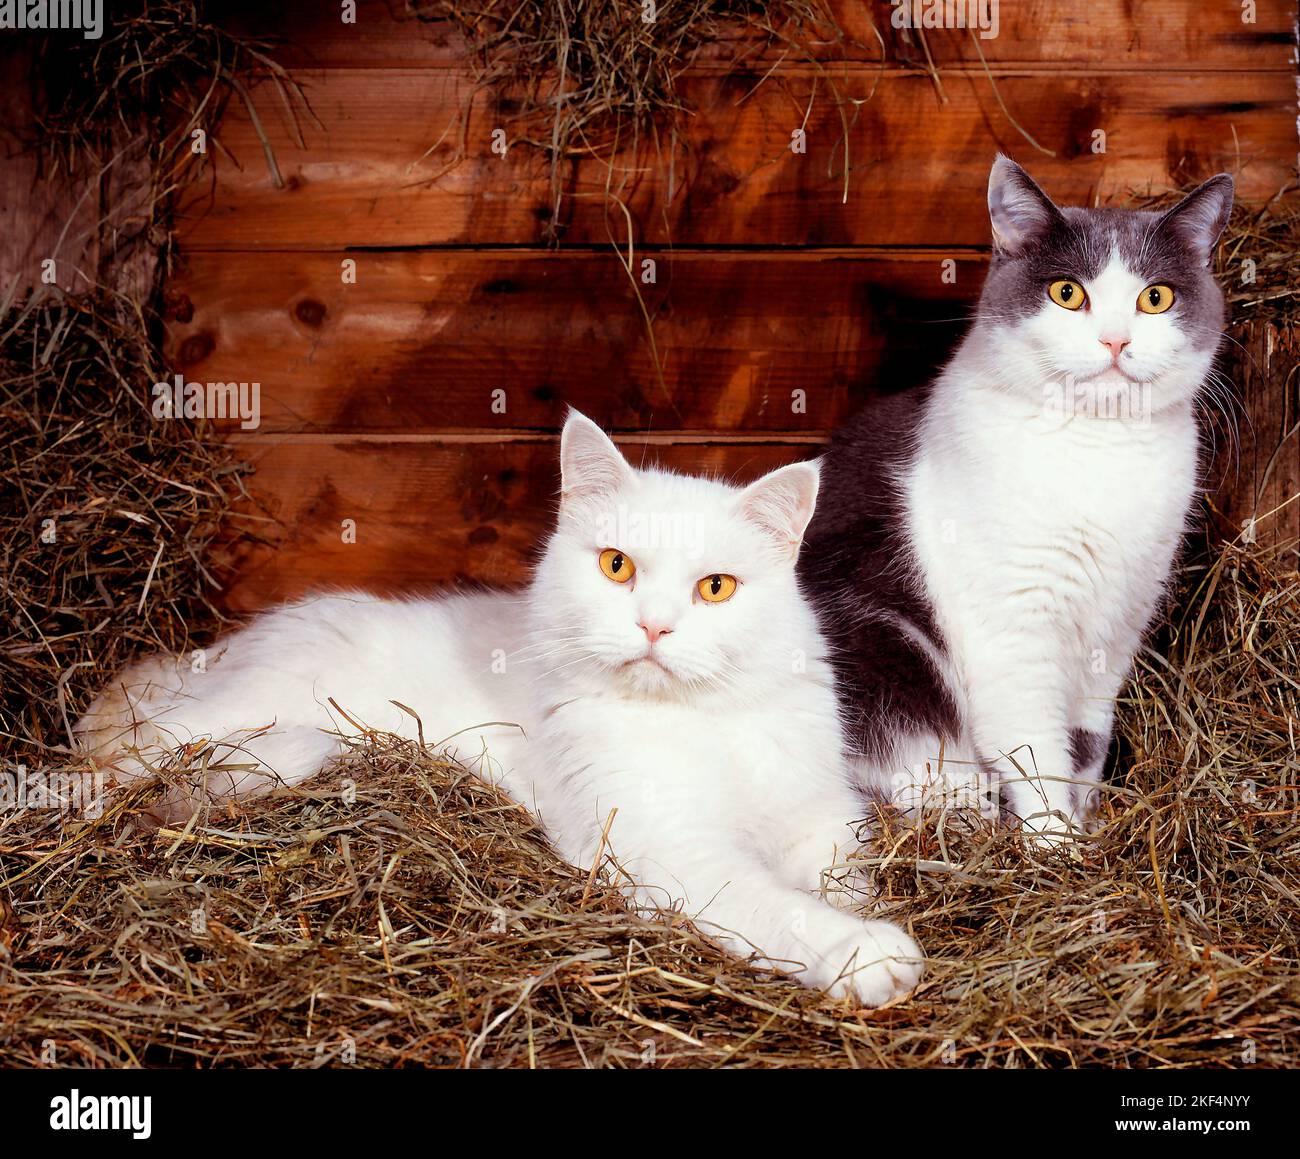 Zwei Hauskatzen liegen im Heu, Rassekatzen, weiss und schwarz-weiss, Stock Photo